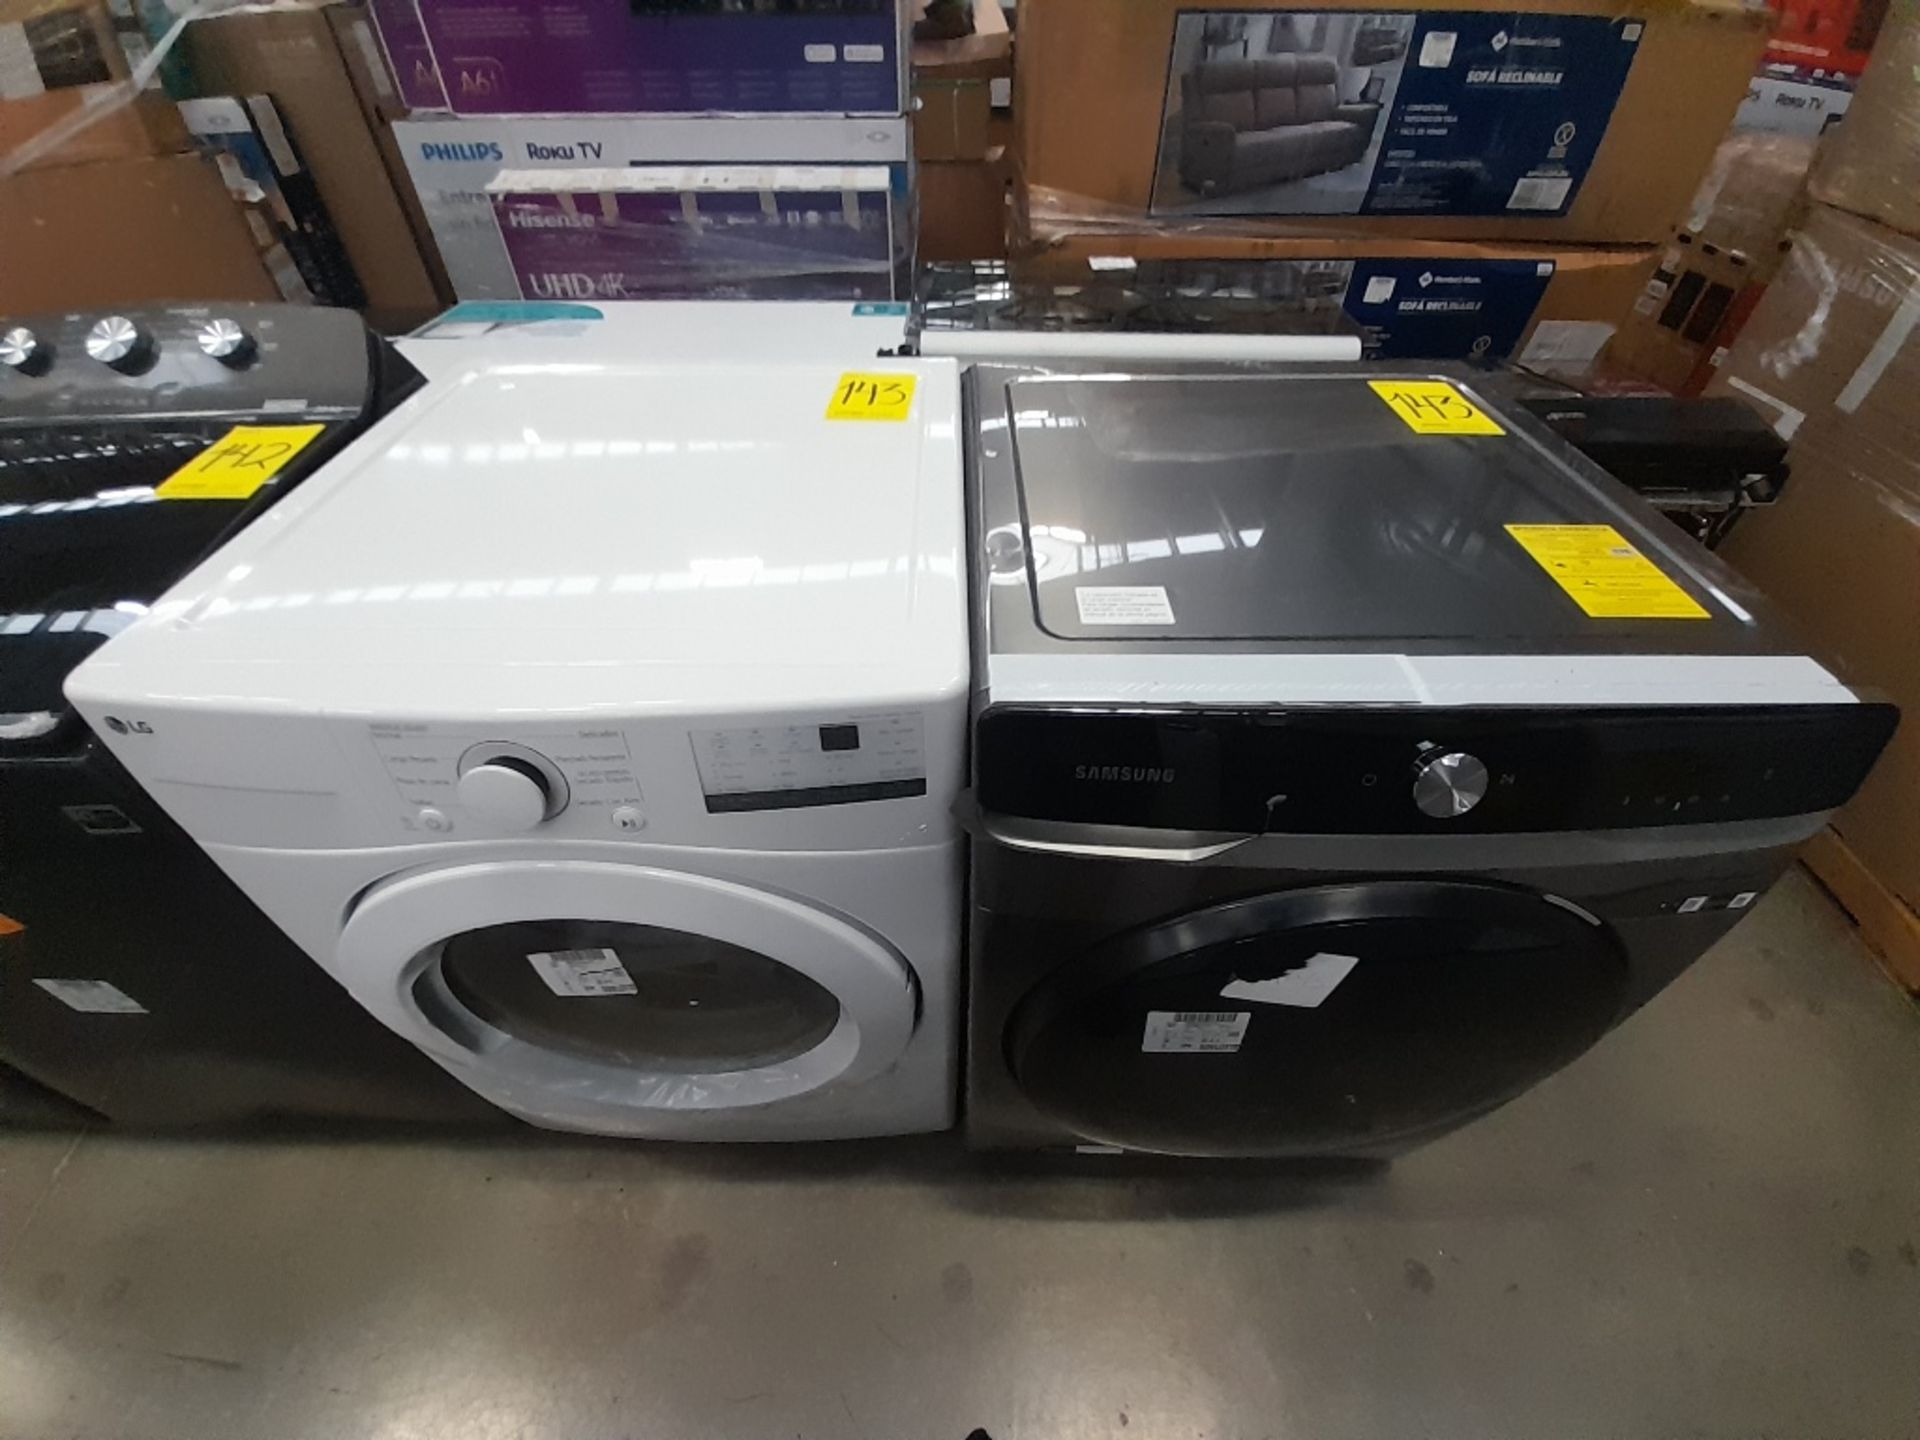 Lote de 1 lavadora y 1 Secadora contiene: 1 lavadora de 20 KG, Marca SAMSUNG, Modelo WD20T6300GP, S